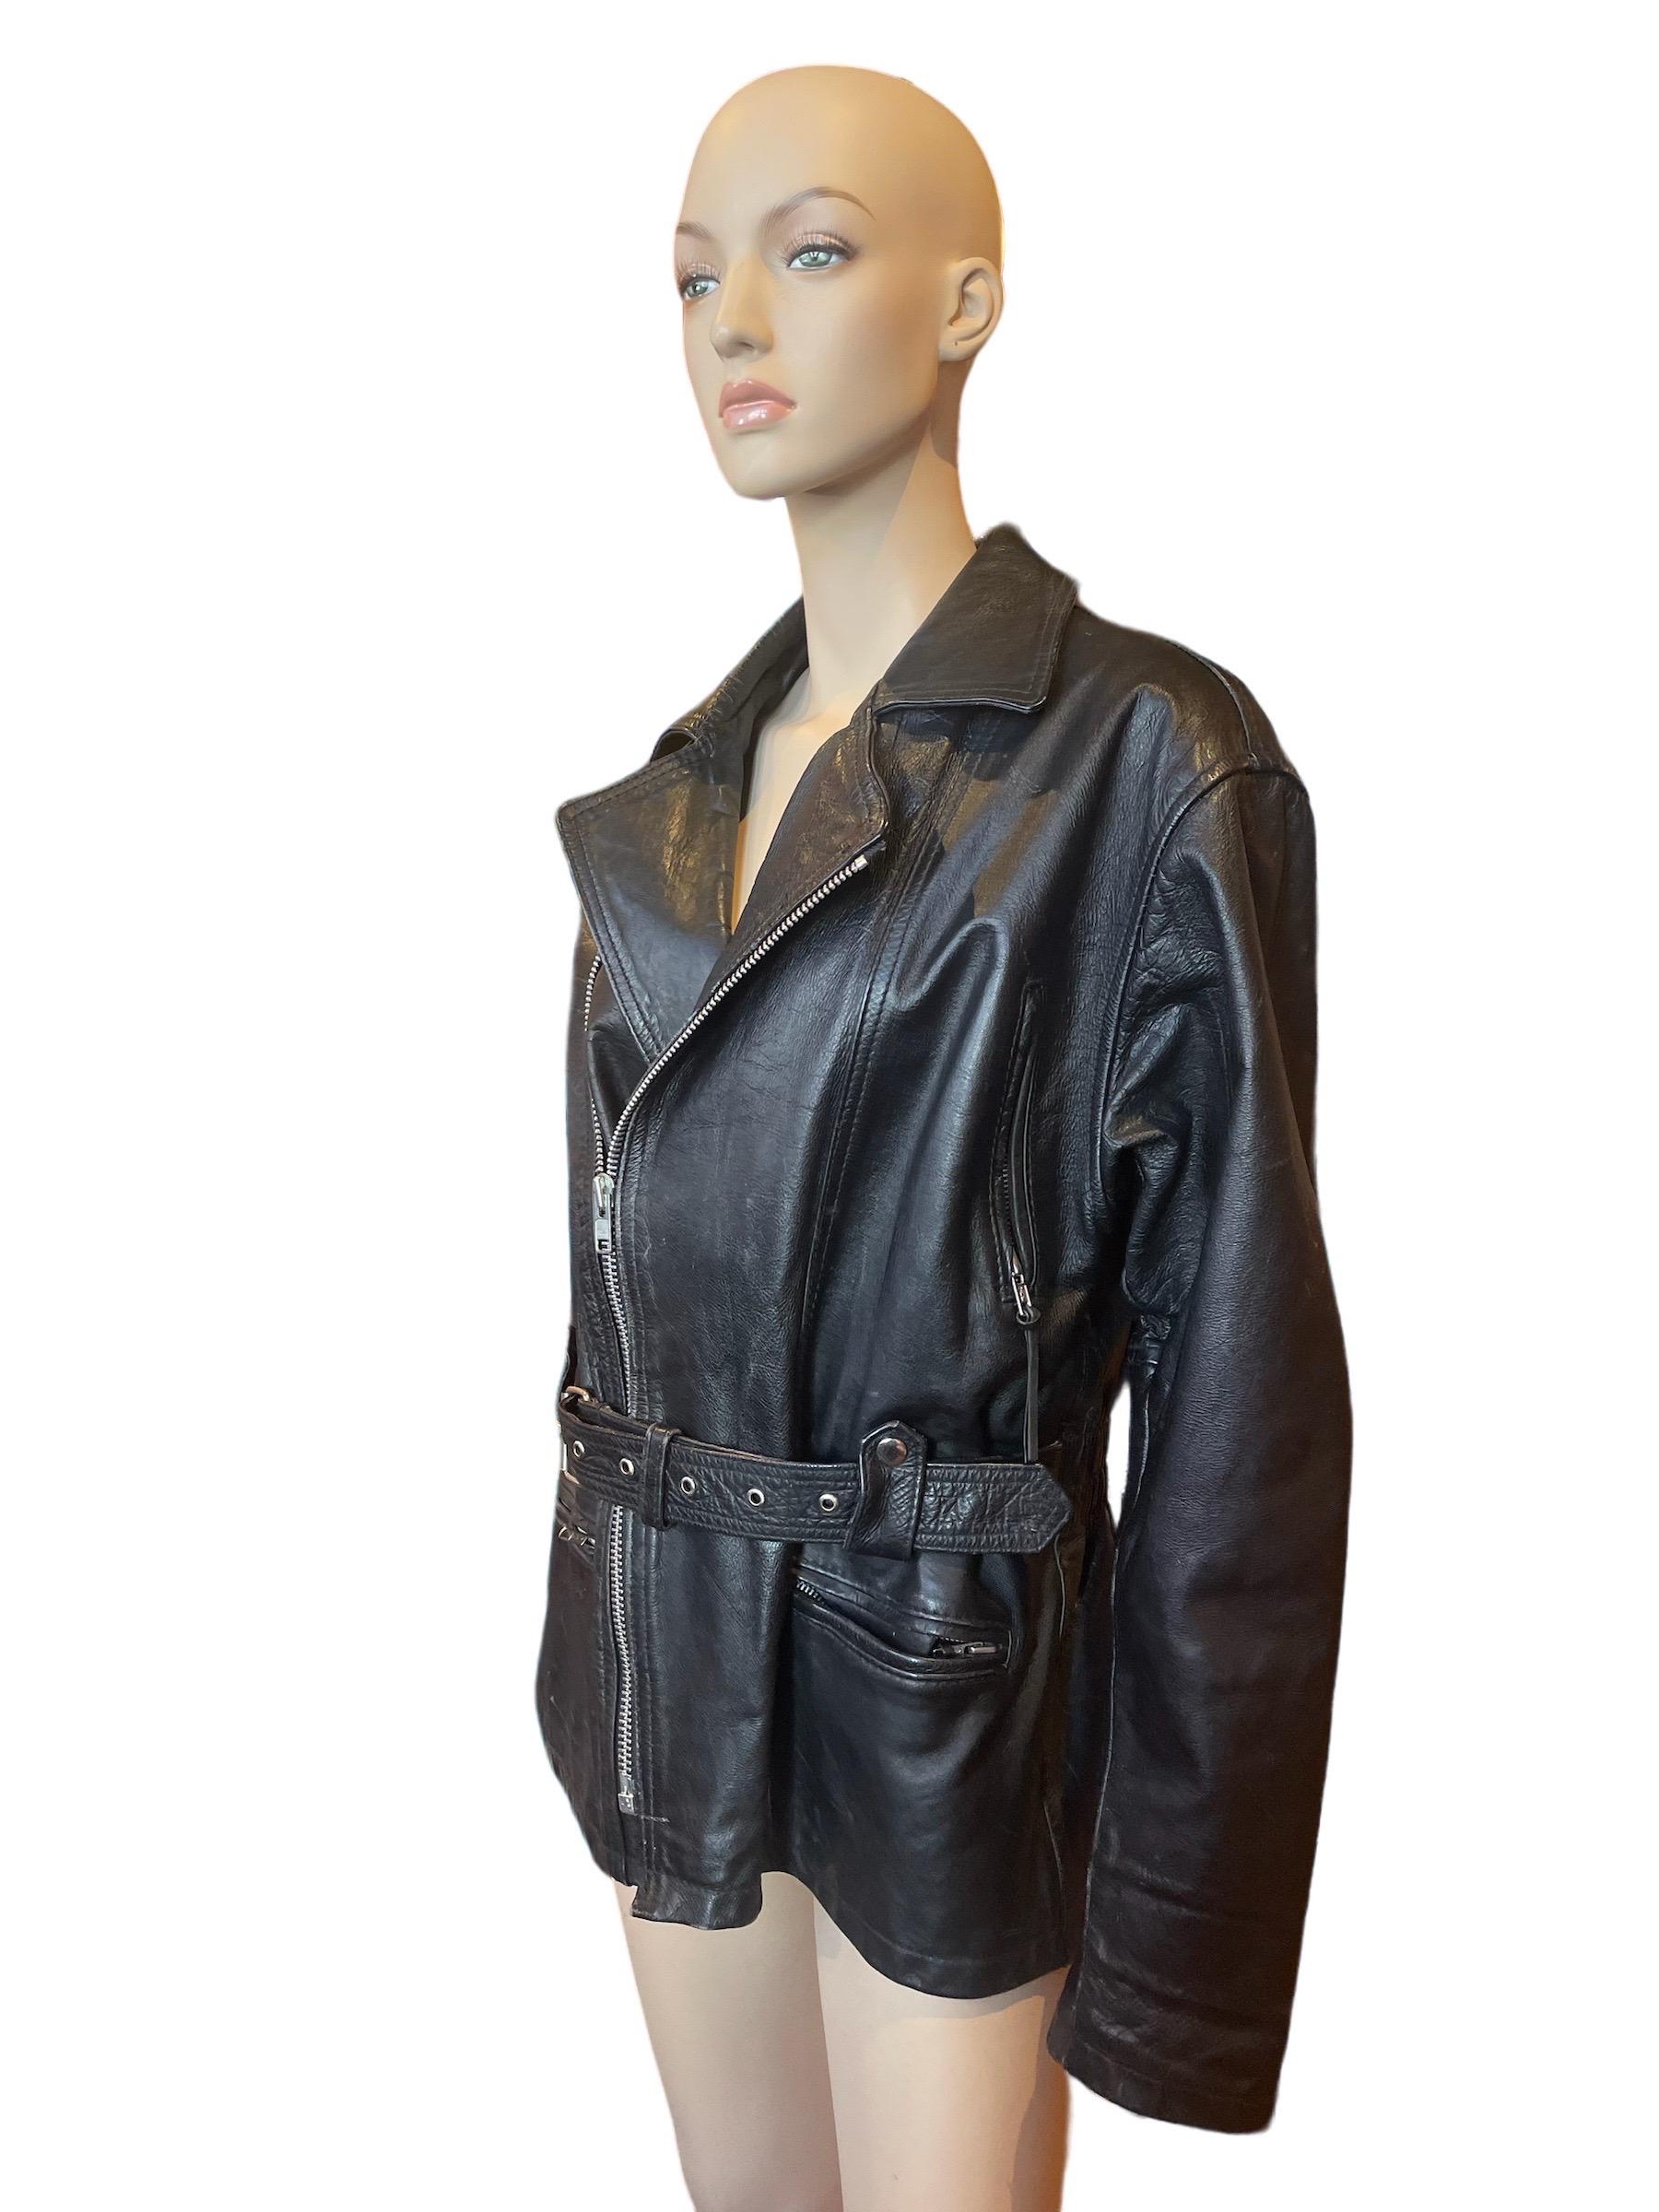 Veste de moto en cuir noir des années 1980 

Veste de moto en cuir noir en très bon état. Deux petites taches de peinture sur la manche droite et l'épaule gauche illustrées. 